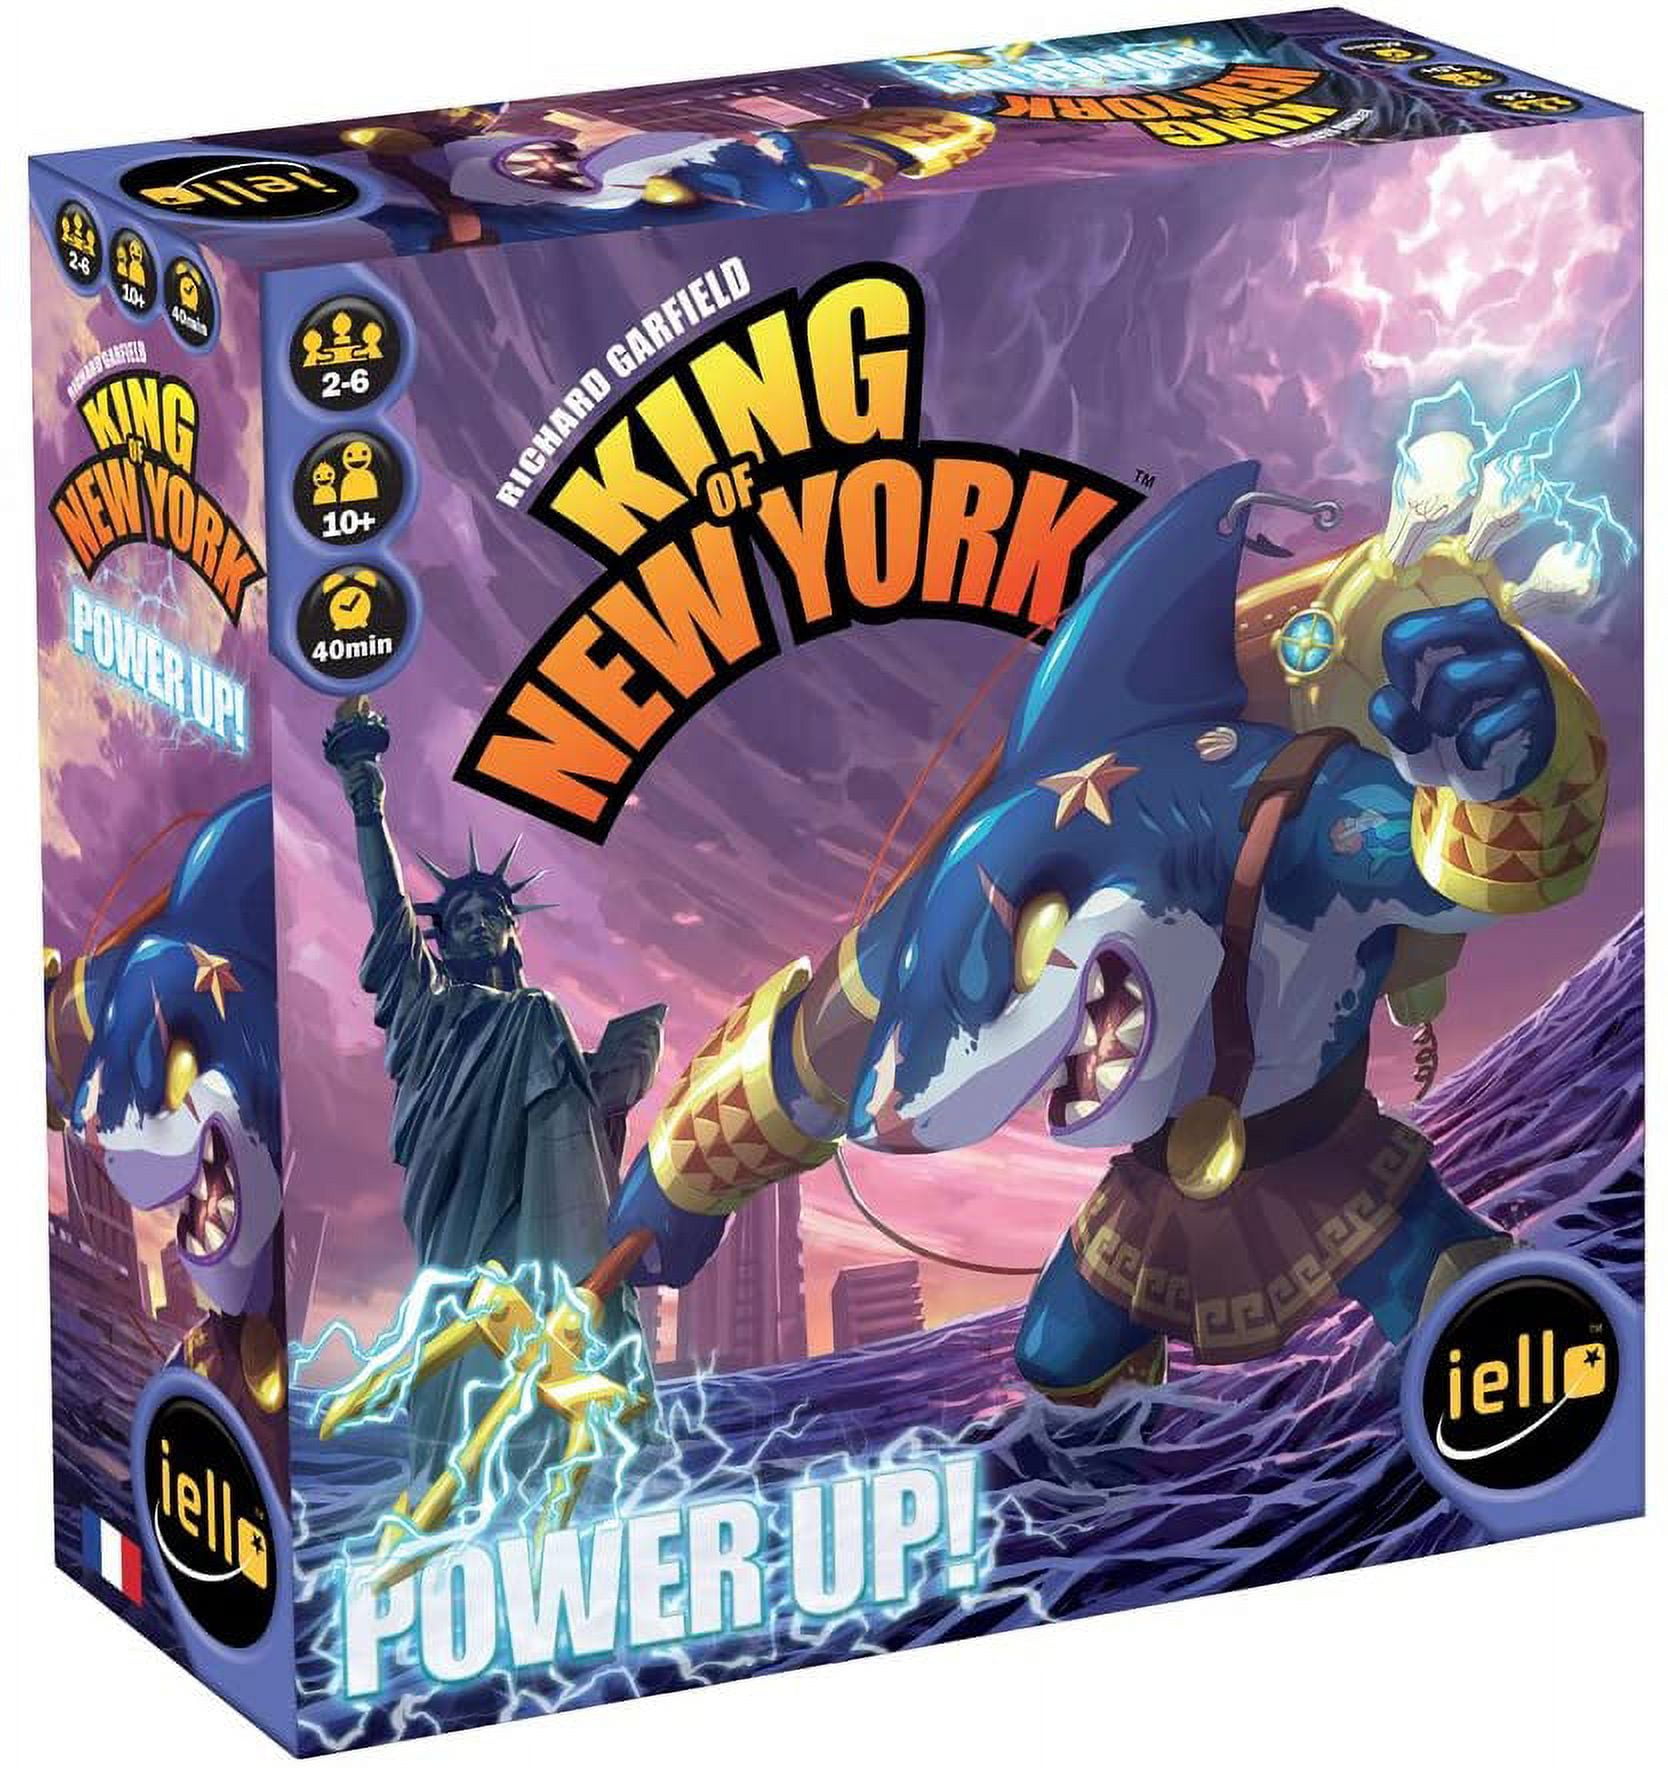 New York Shark - Flash Game Playthrough 